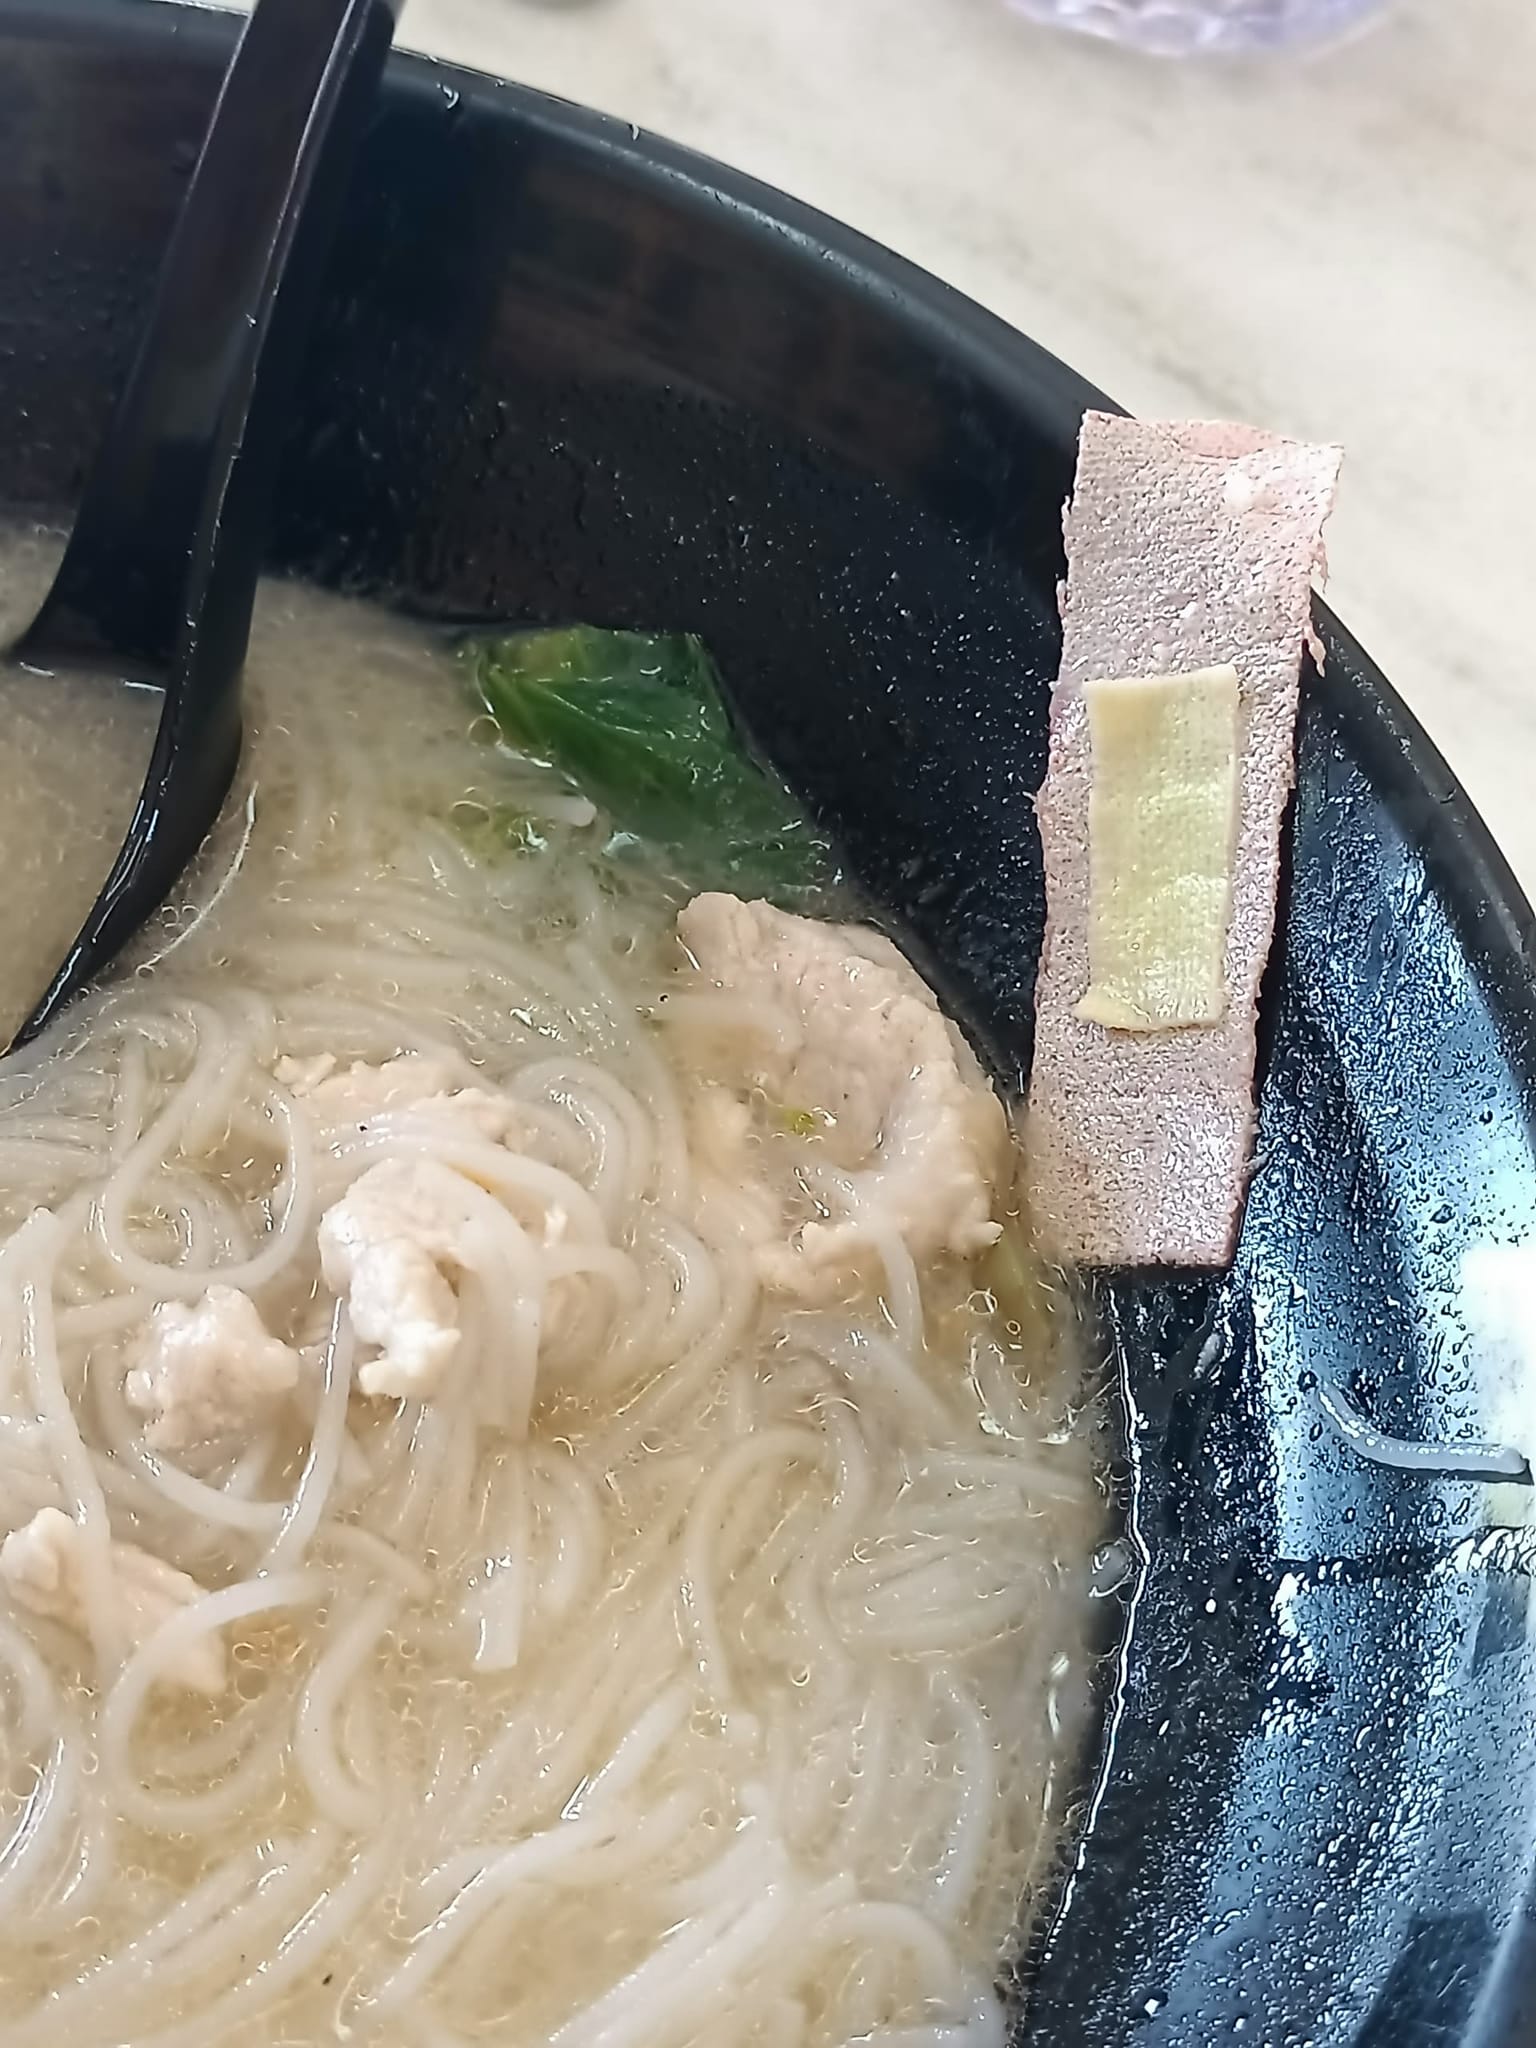 Plaster found inside noodle soup